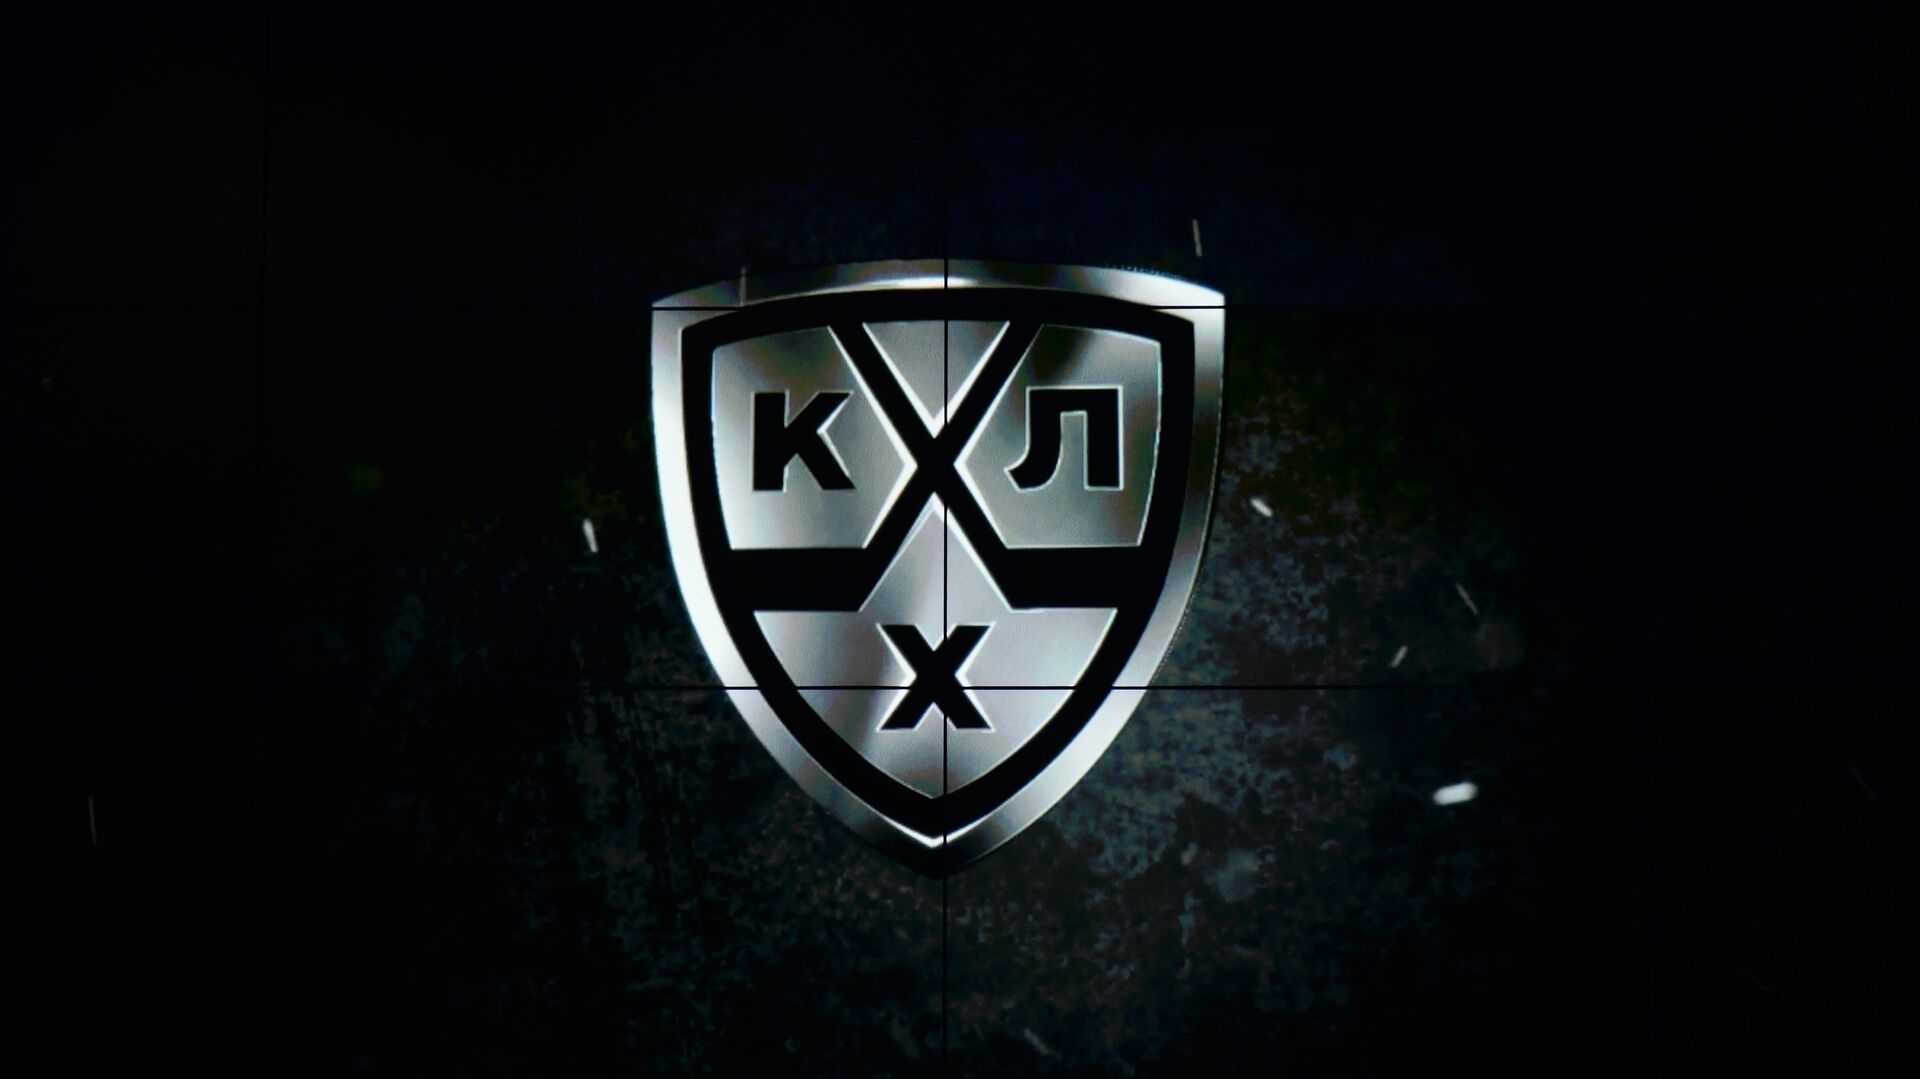 Логотип Континентальной хоккейной лиги (КХЛ) - РИА Новости, 1920, 29.09.2020